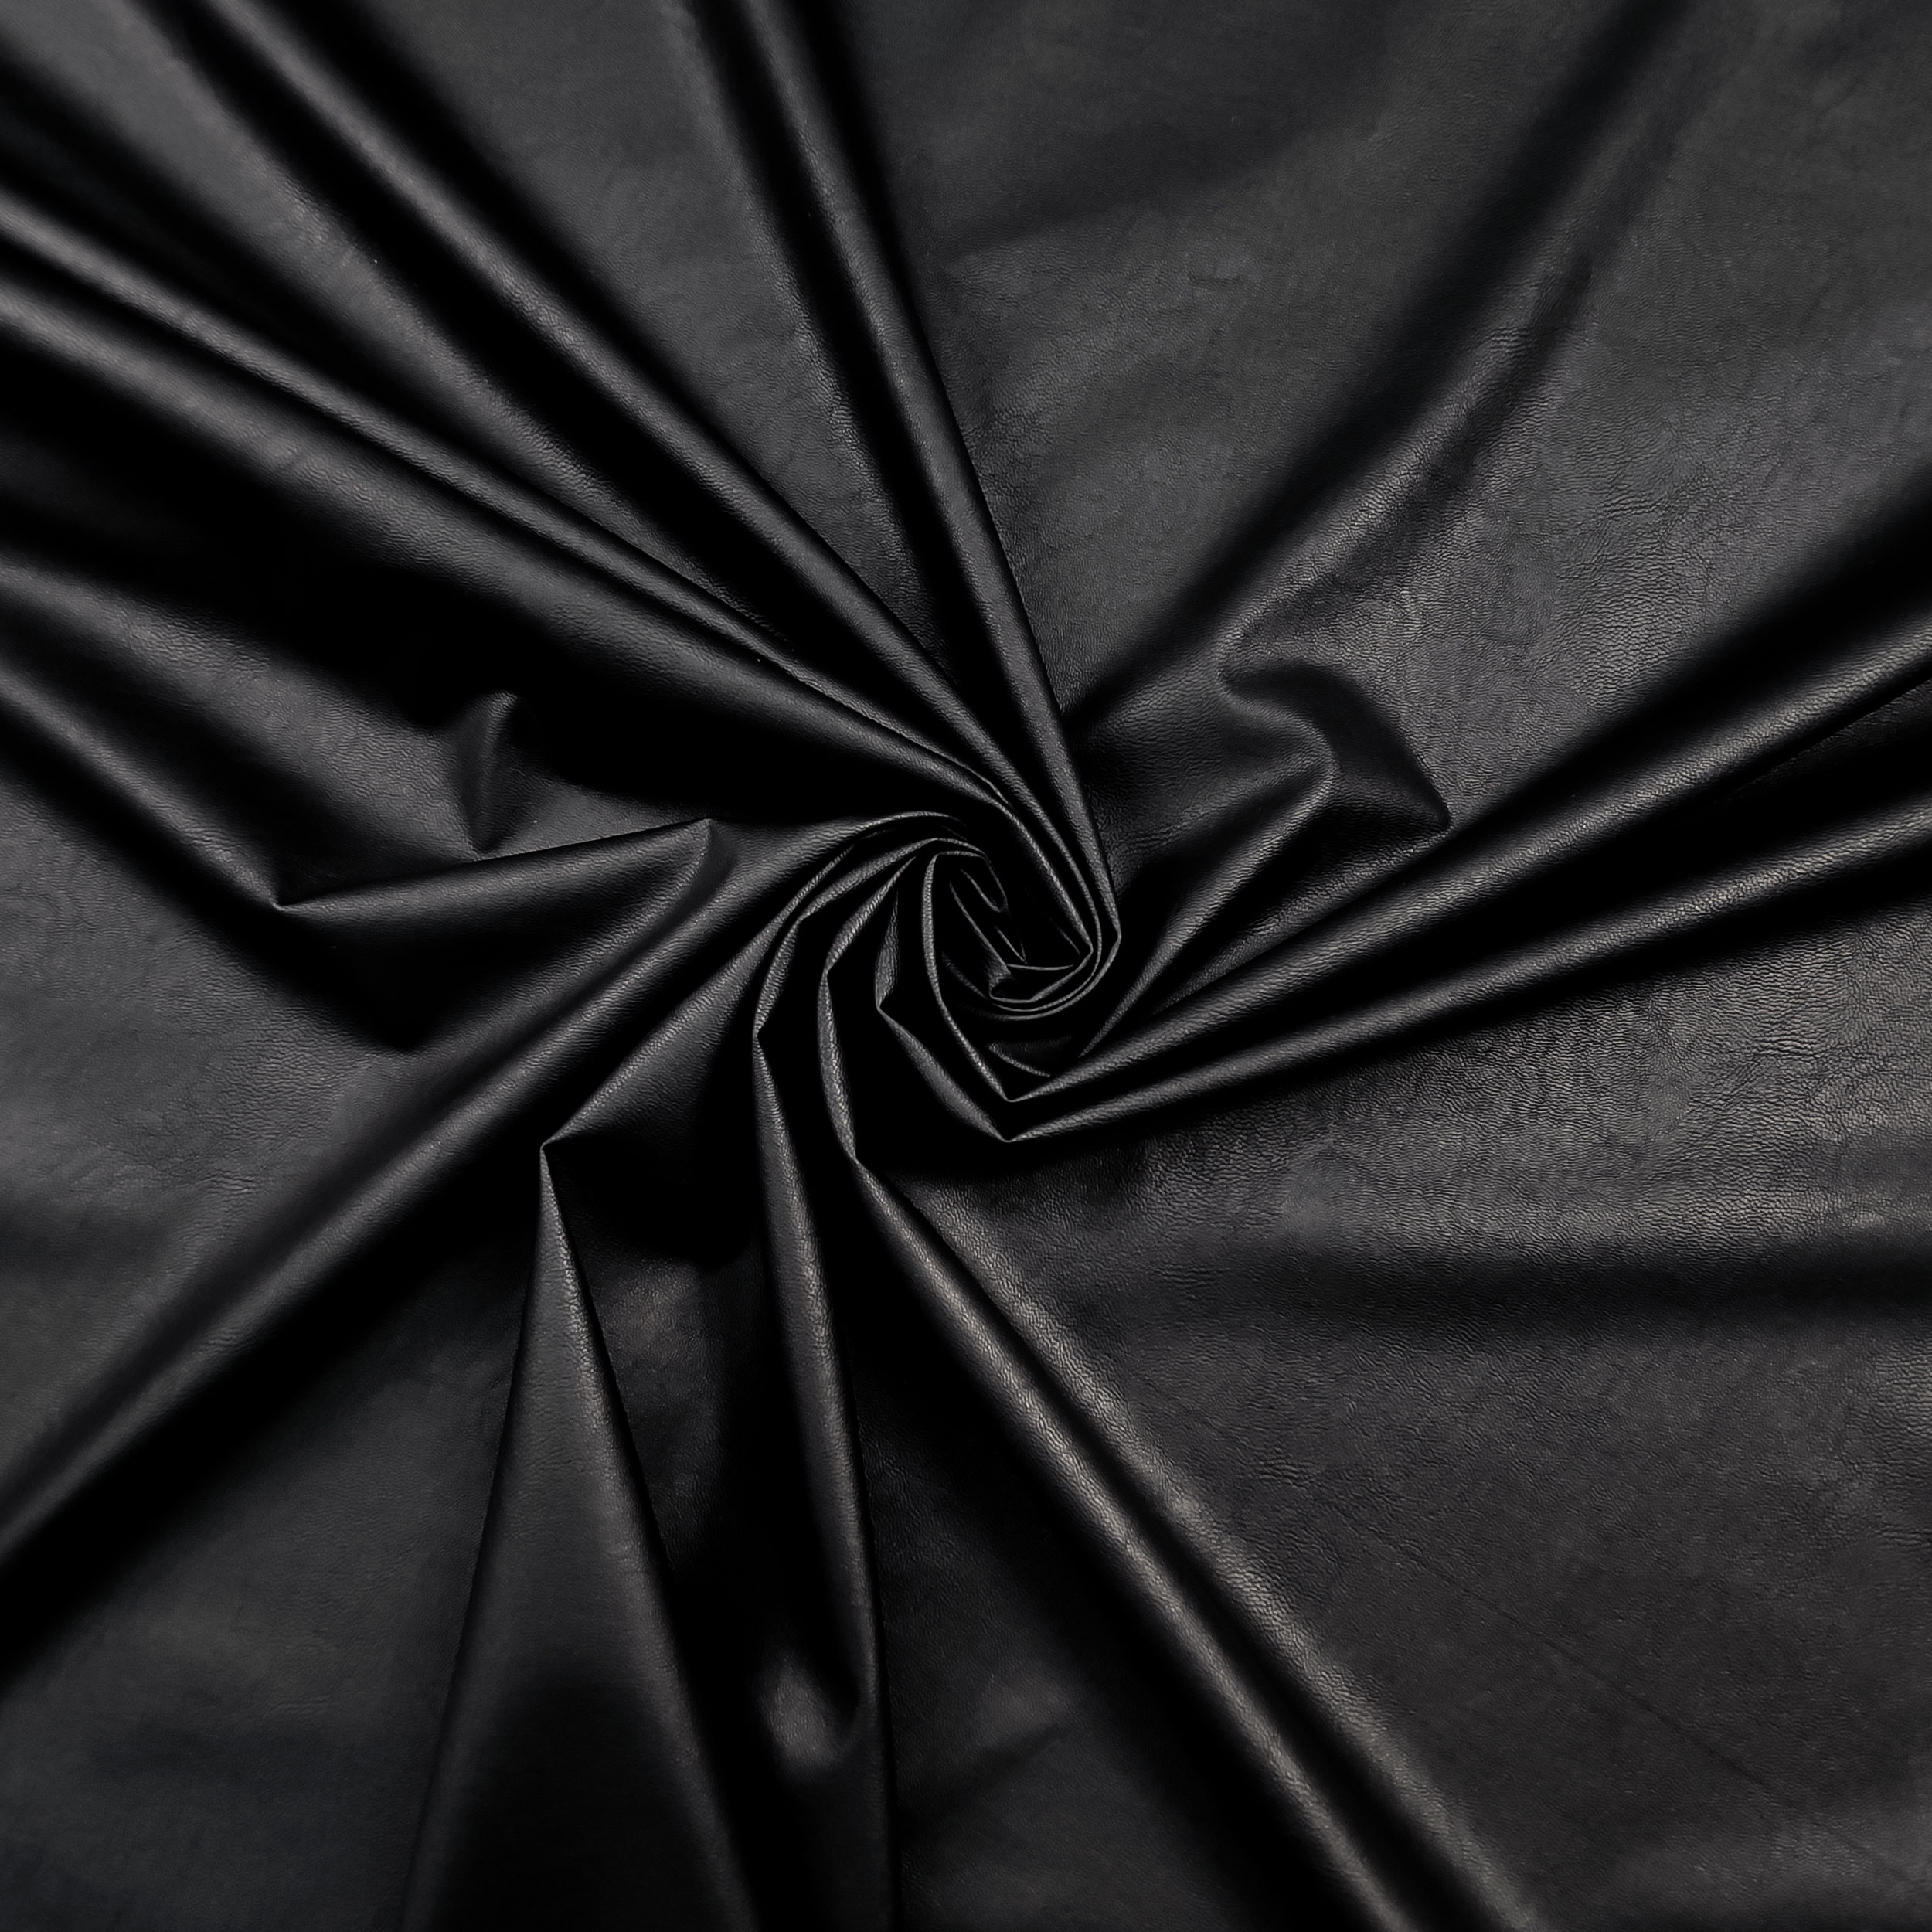 tessuto nero sintetico abbigliamento